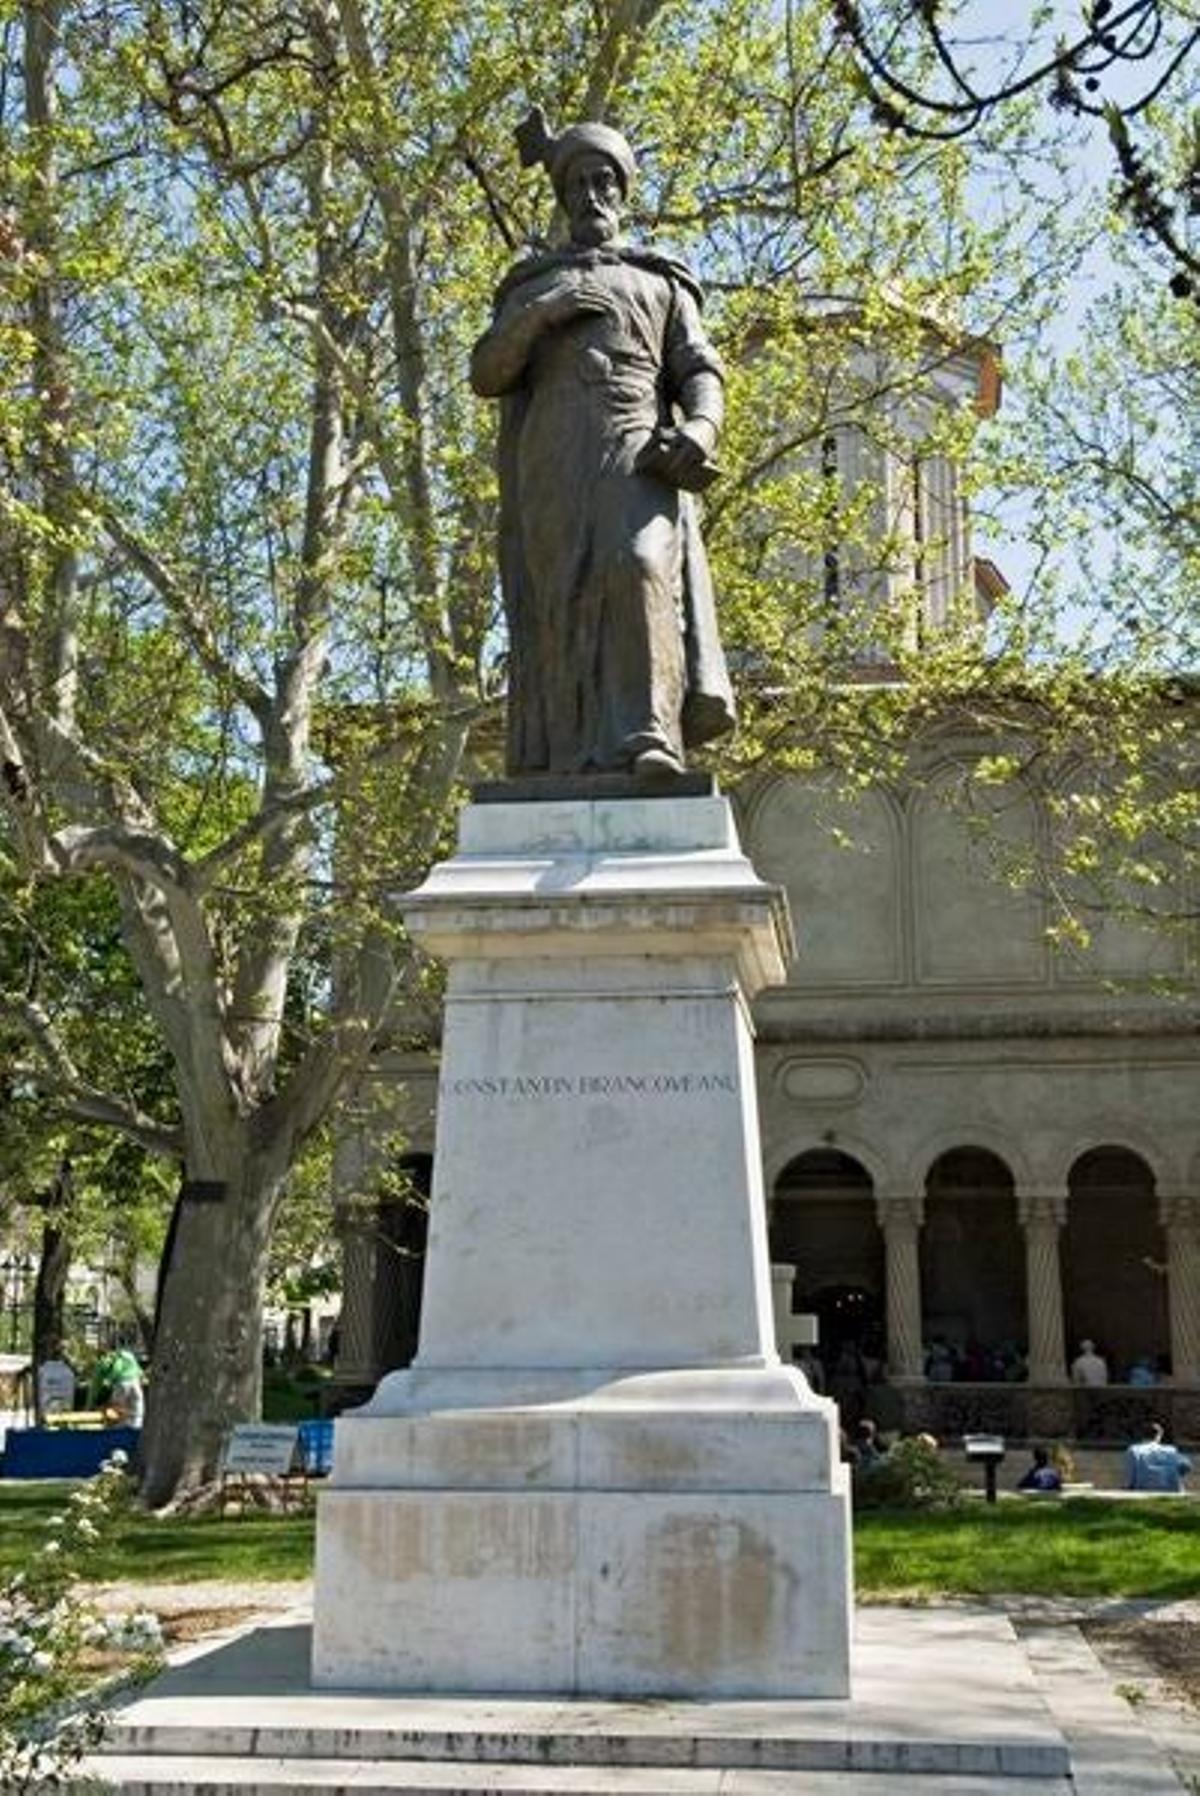 La estatua de Constantin Brancusi, el escultor más famoso de Rumania